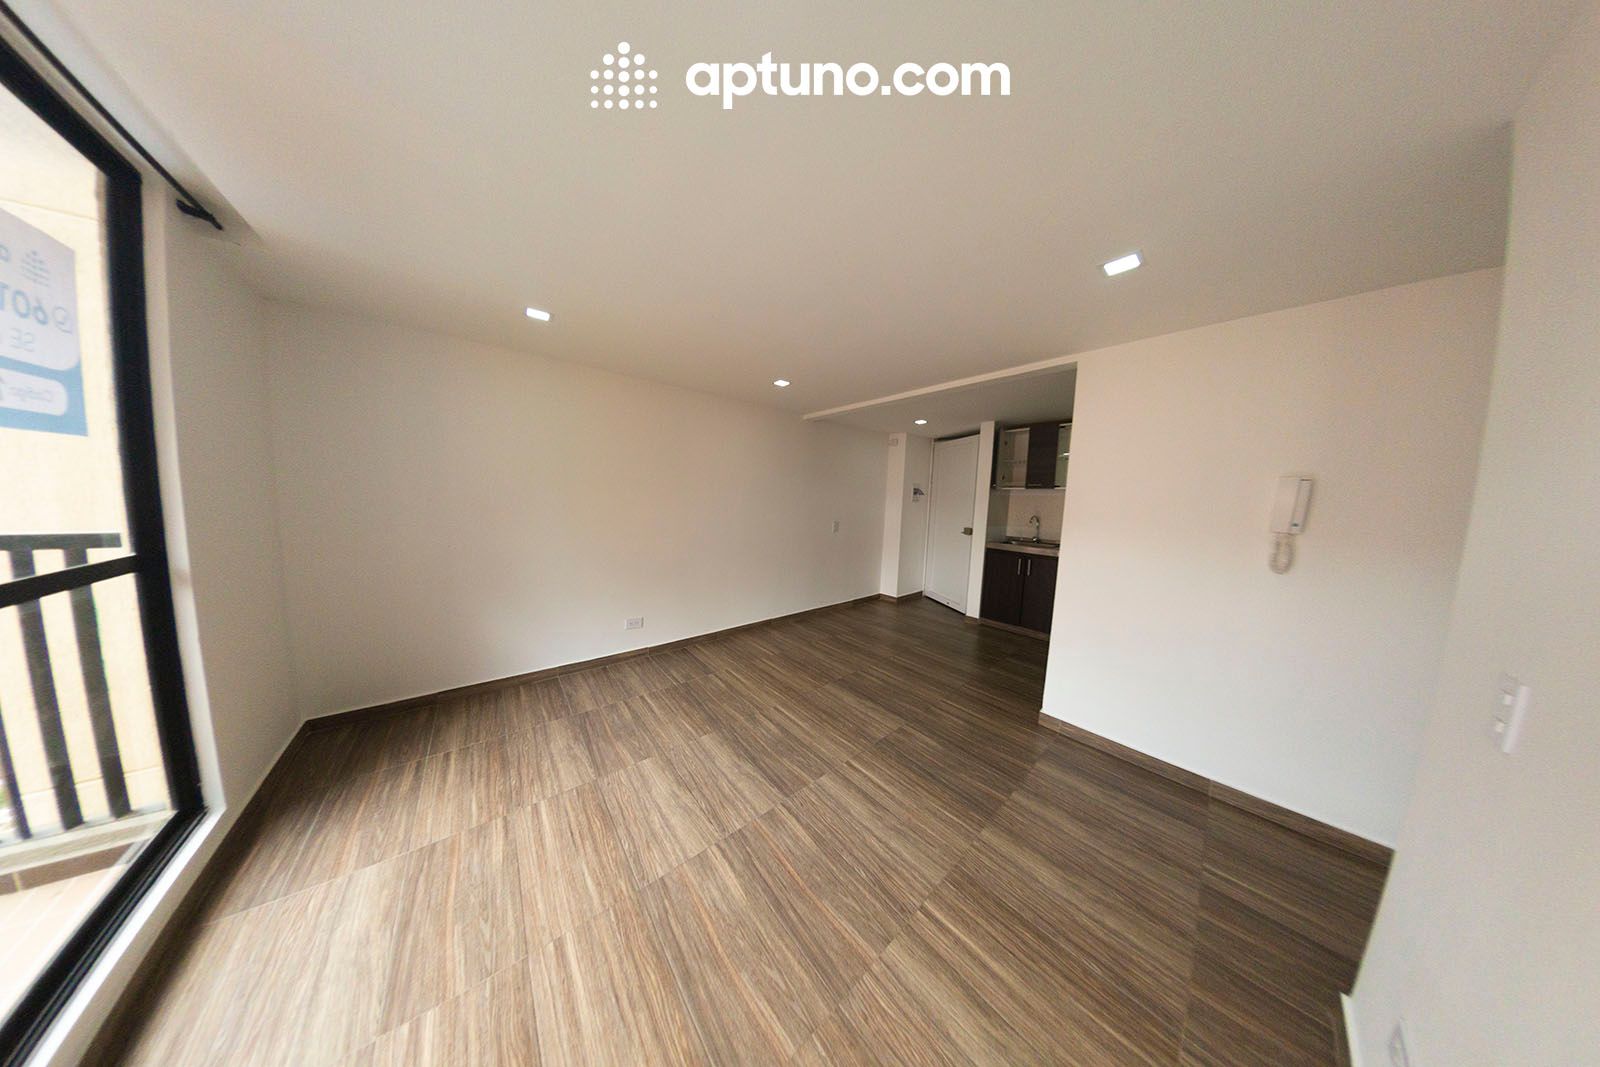 Apartamento en arriendo Madrid 64 m² - $ 820.000,00